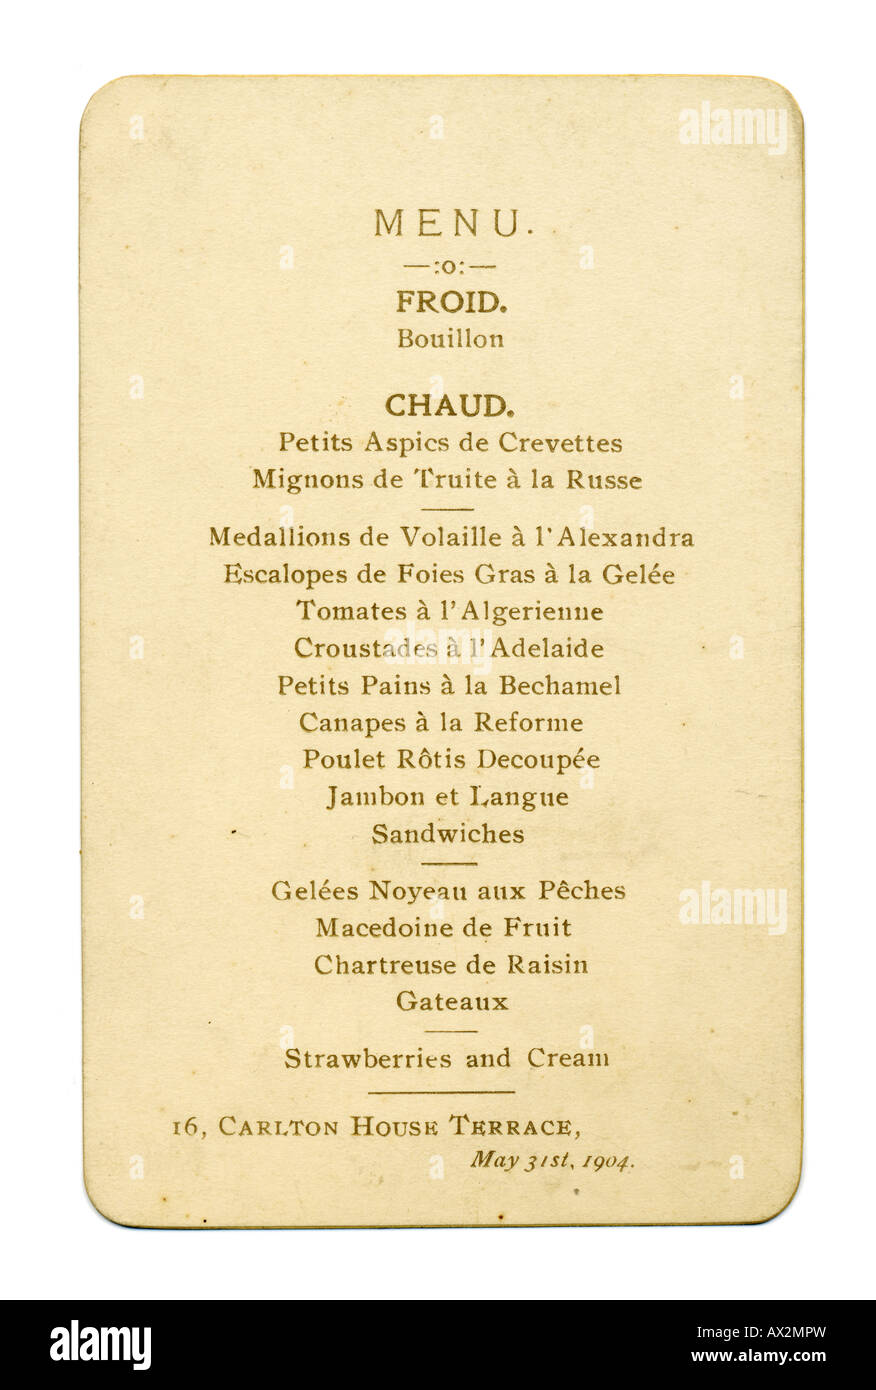 1900er Jahre Edwardian Abend Abendkarte 31. Mai 1904 Stockfoto